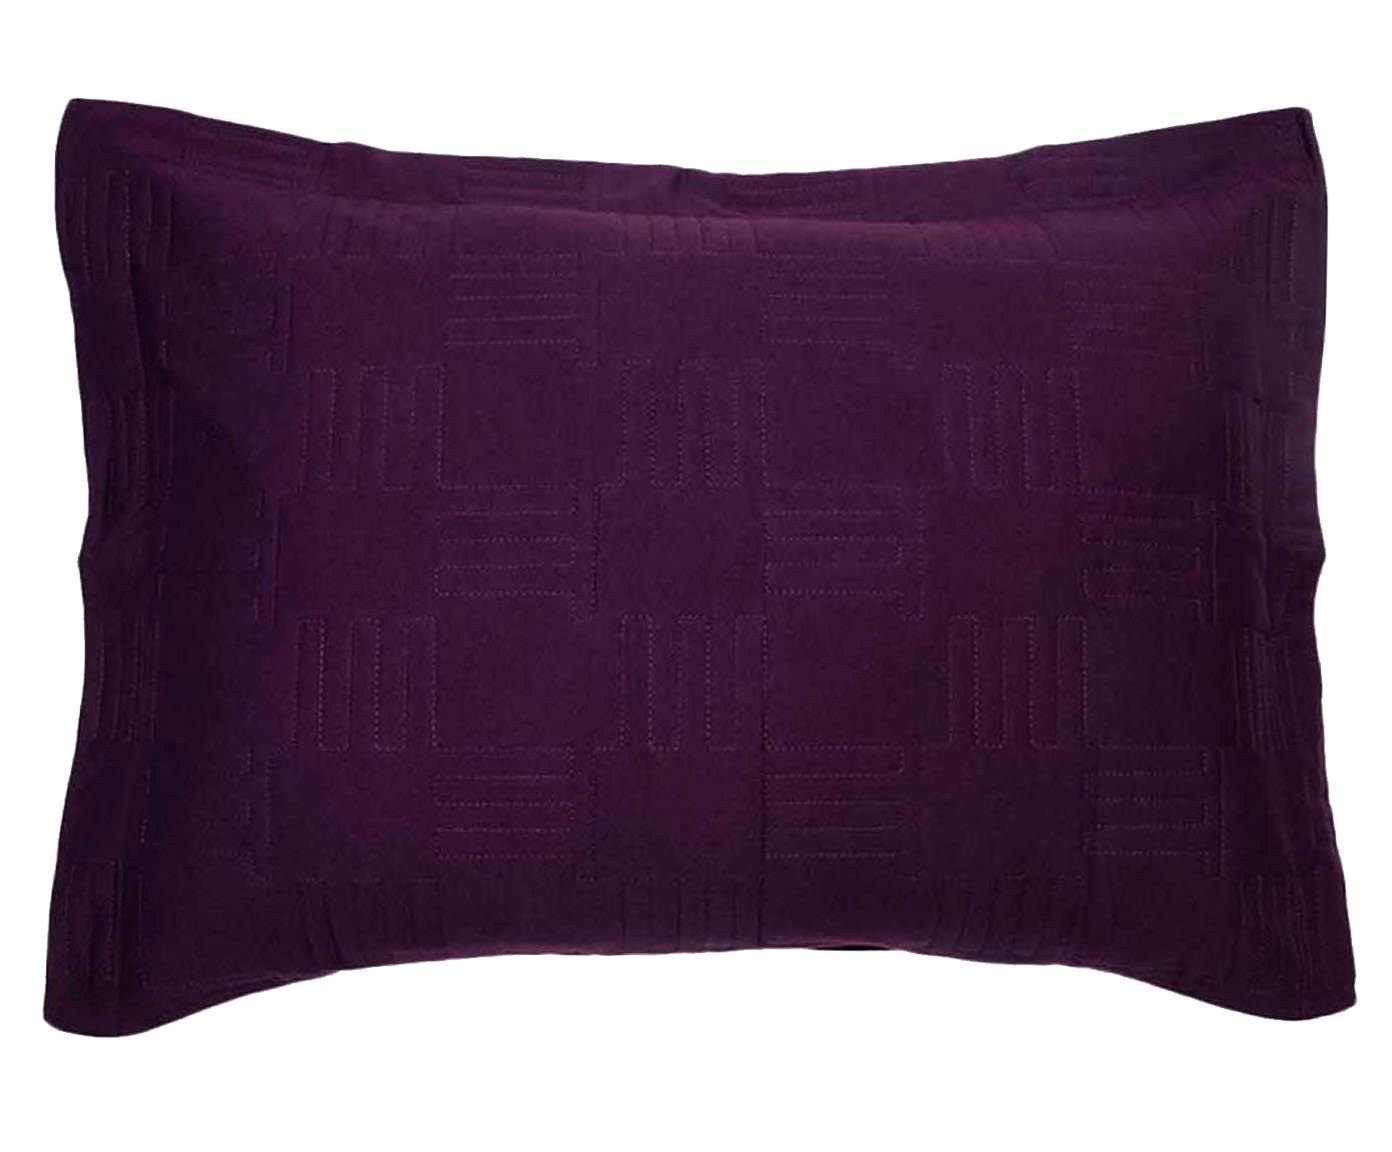 Porta-travesseiro colorado - intuitive | Westwing.com.br